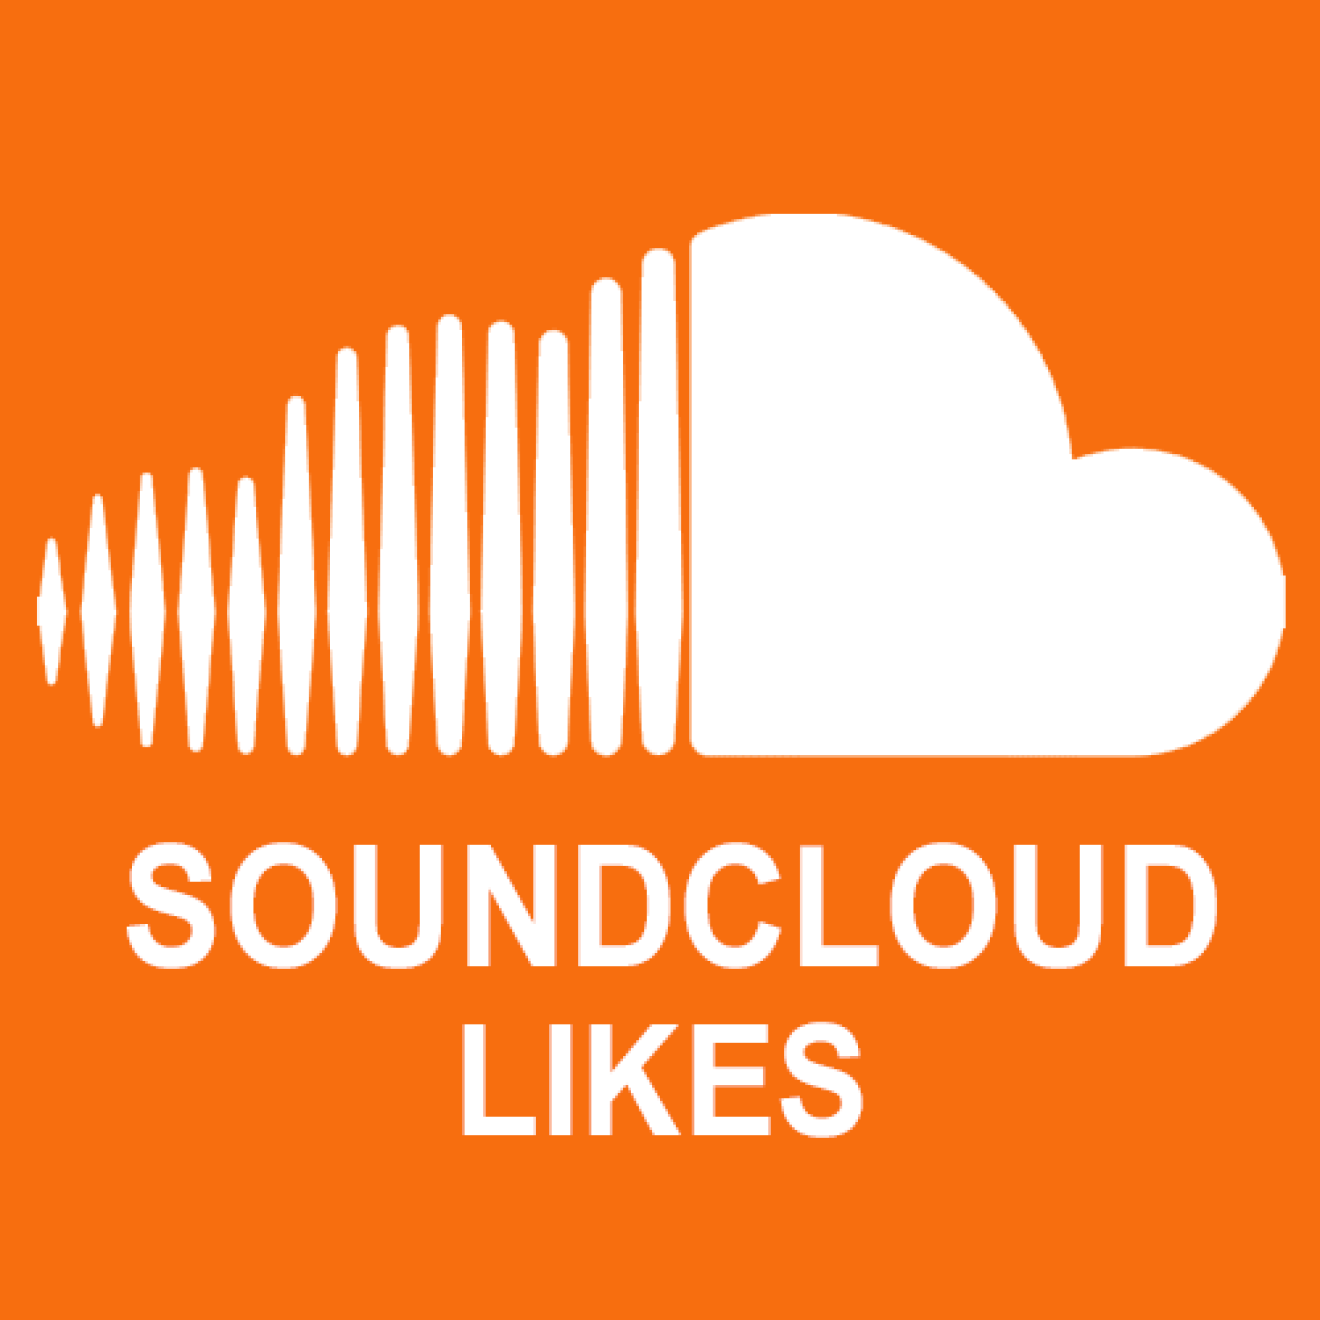 300 Soundcloud Likes / Gefällt mir Angaben für Dich